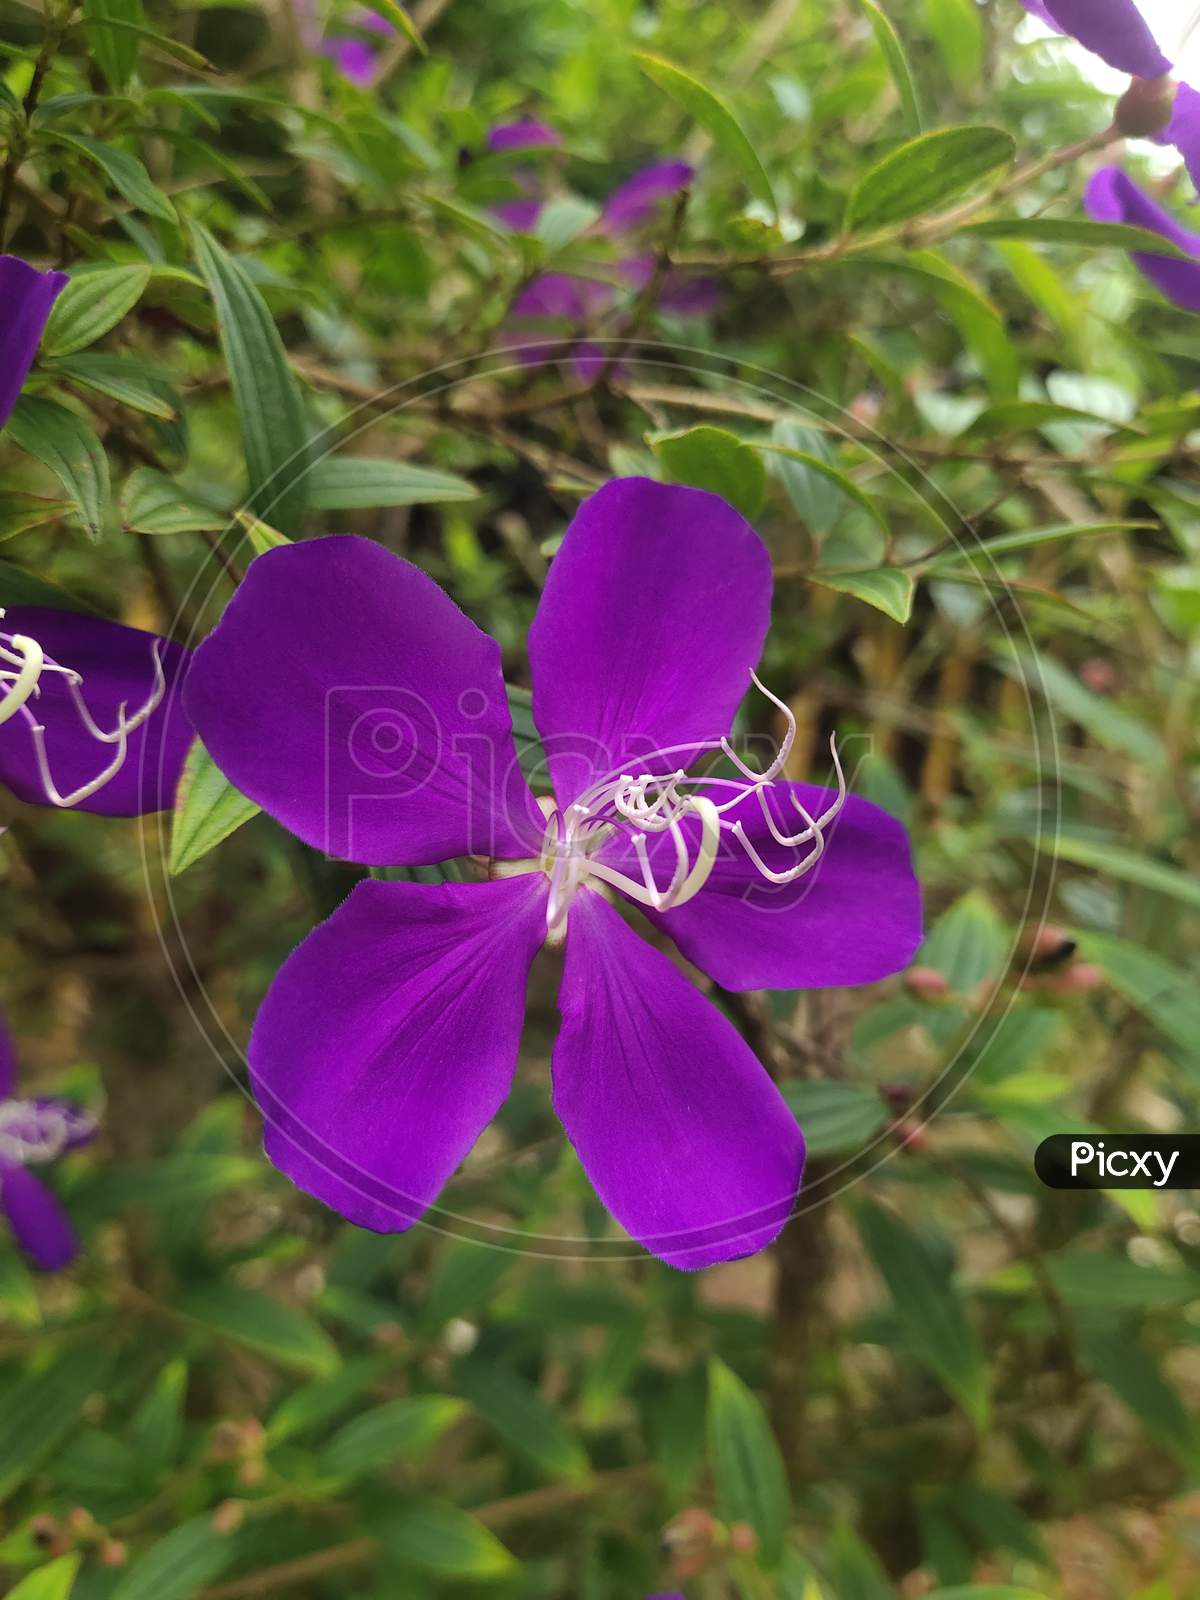 Single purple flower